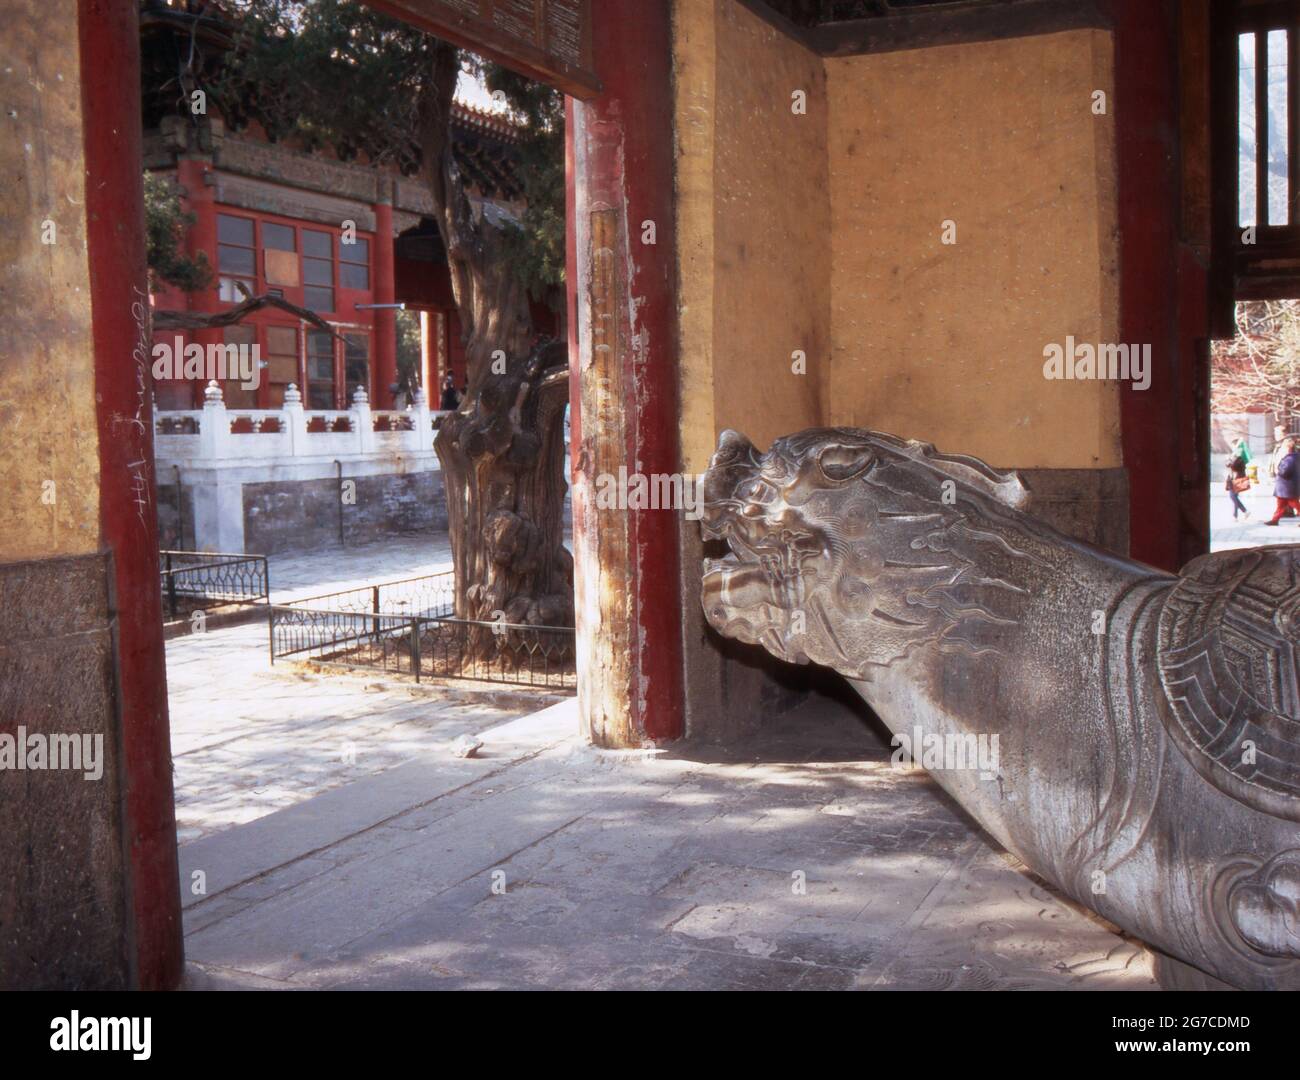 Statua einer Schildkröte, auf die Straße schauend, a Pechino, Cina 1998. Stato Tartaruga guardando in strada a Pechino, Cina 1998. Foto Stock